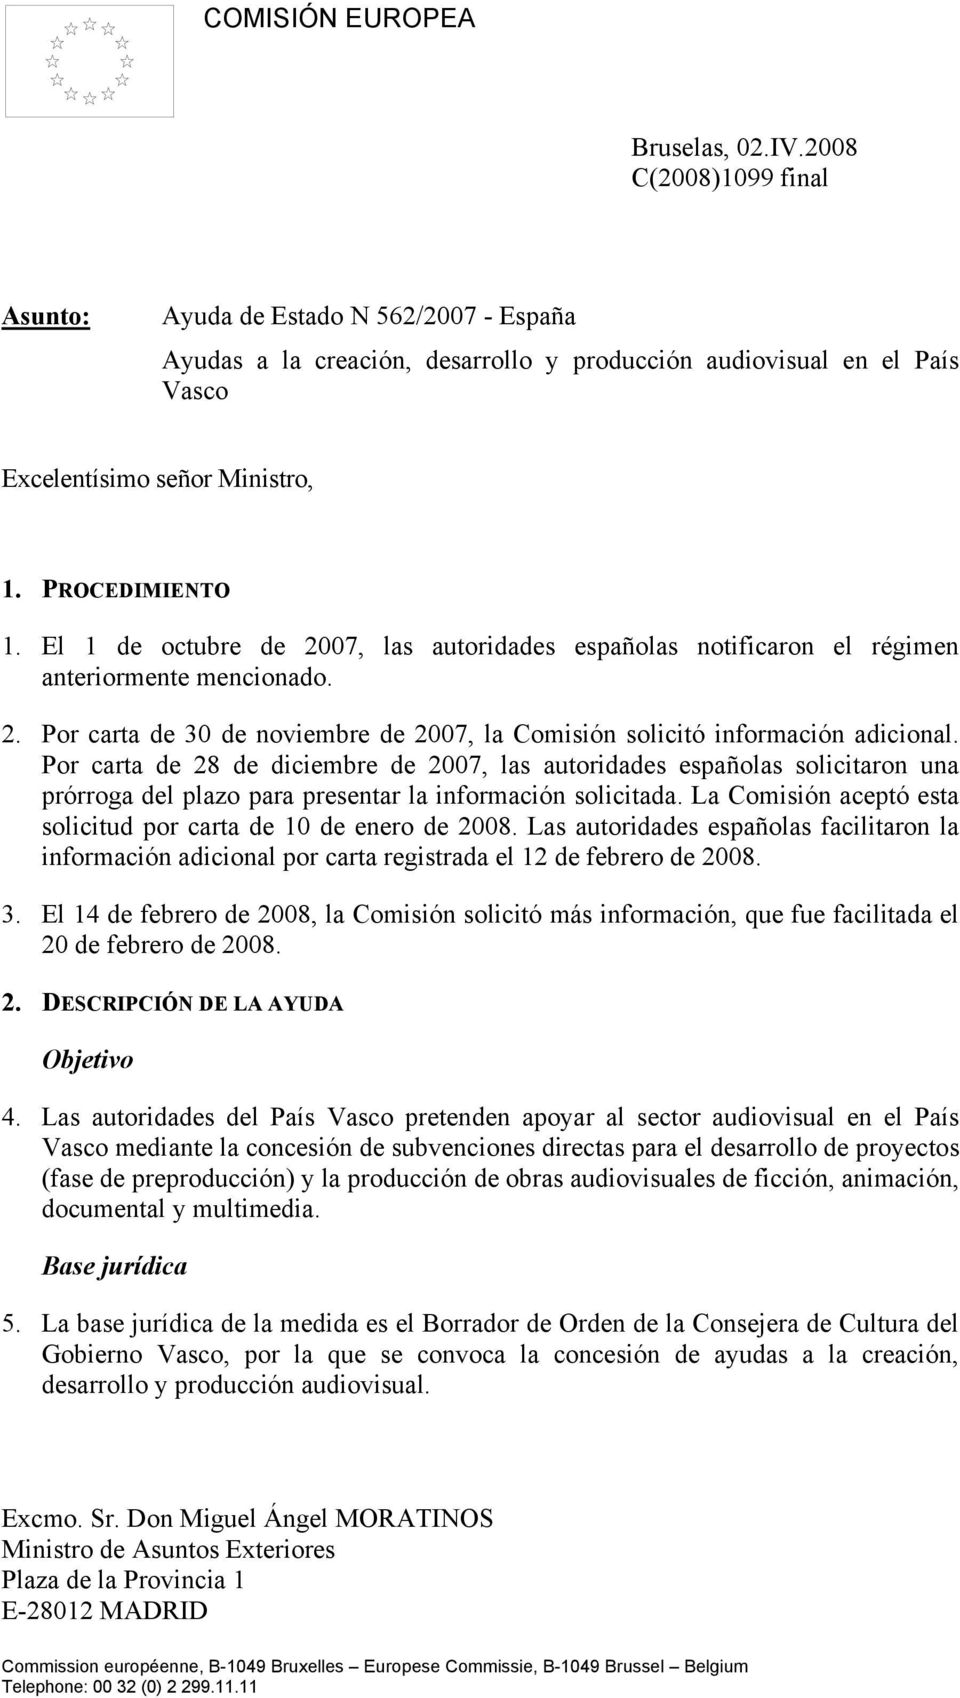 El 1 de octubre de 2007, las autoridades españolas notificaron el régimen anteriormente mencionado. 2. Por carta de 30 de noviembre de 2007, la Comisión solicitó información adicional.